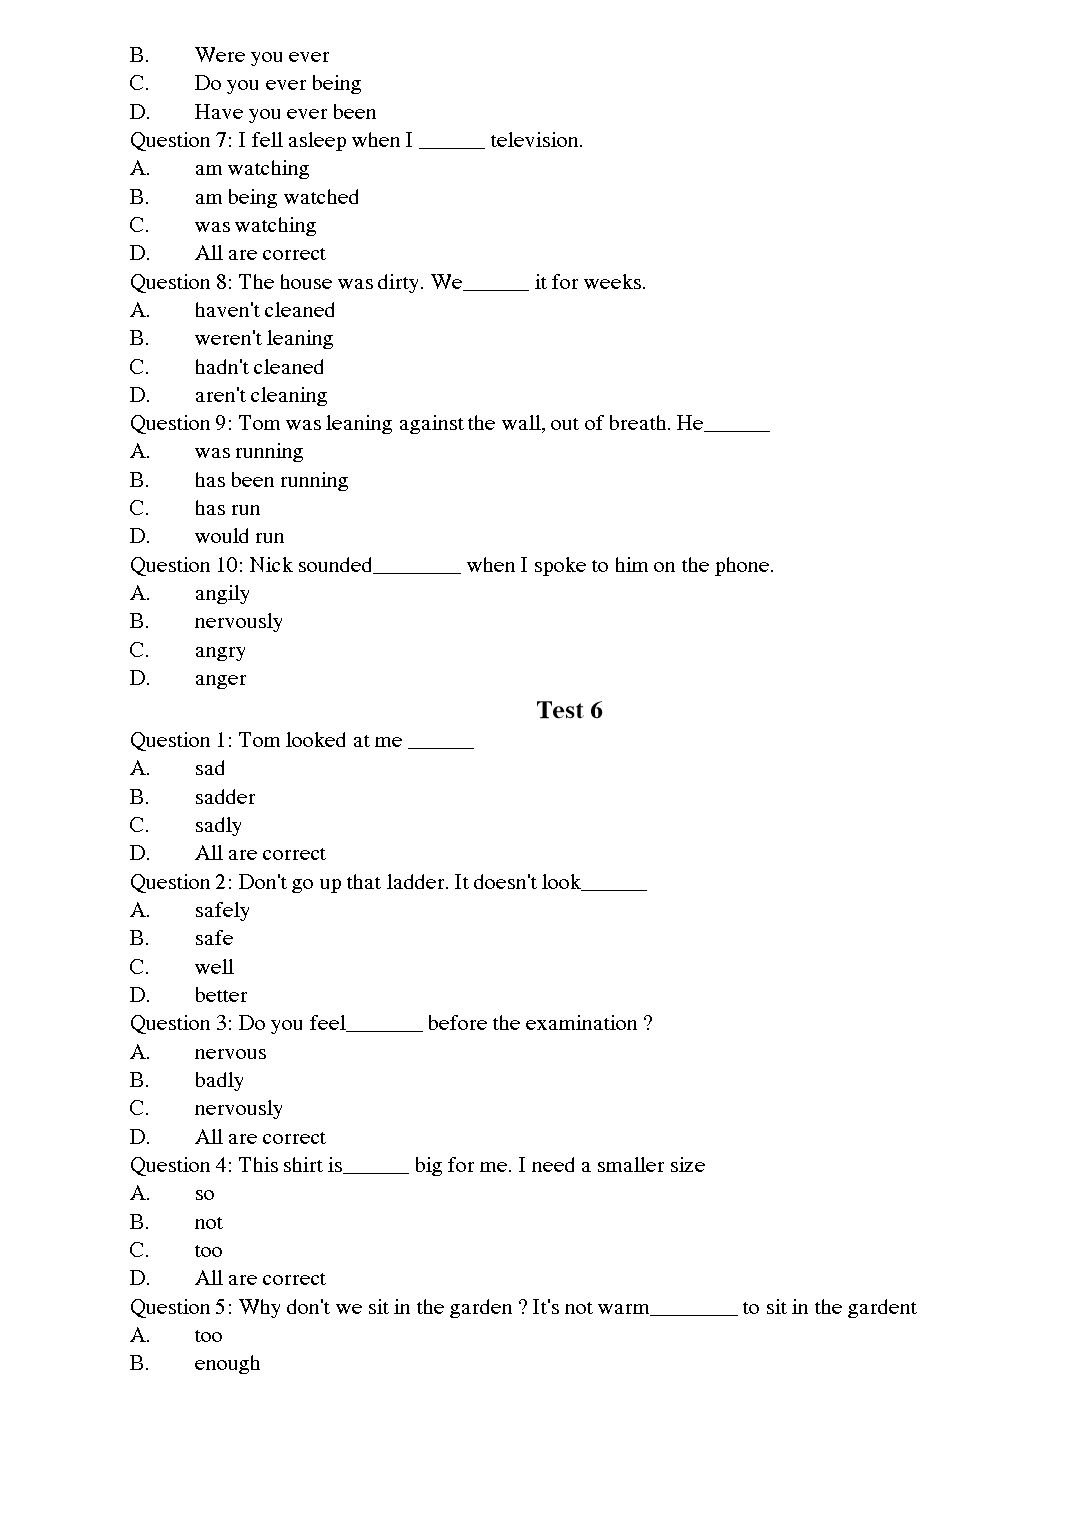 Tiếng Anh - Level A trang 6